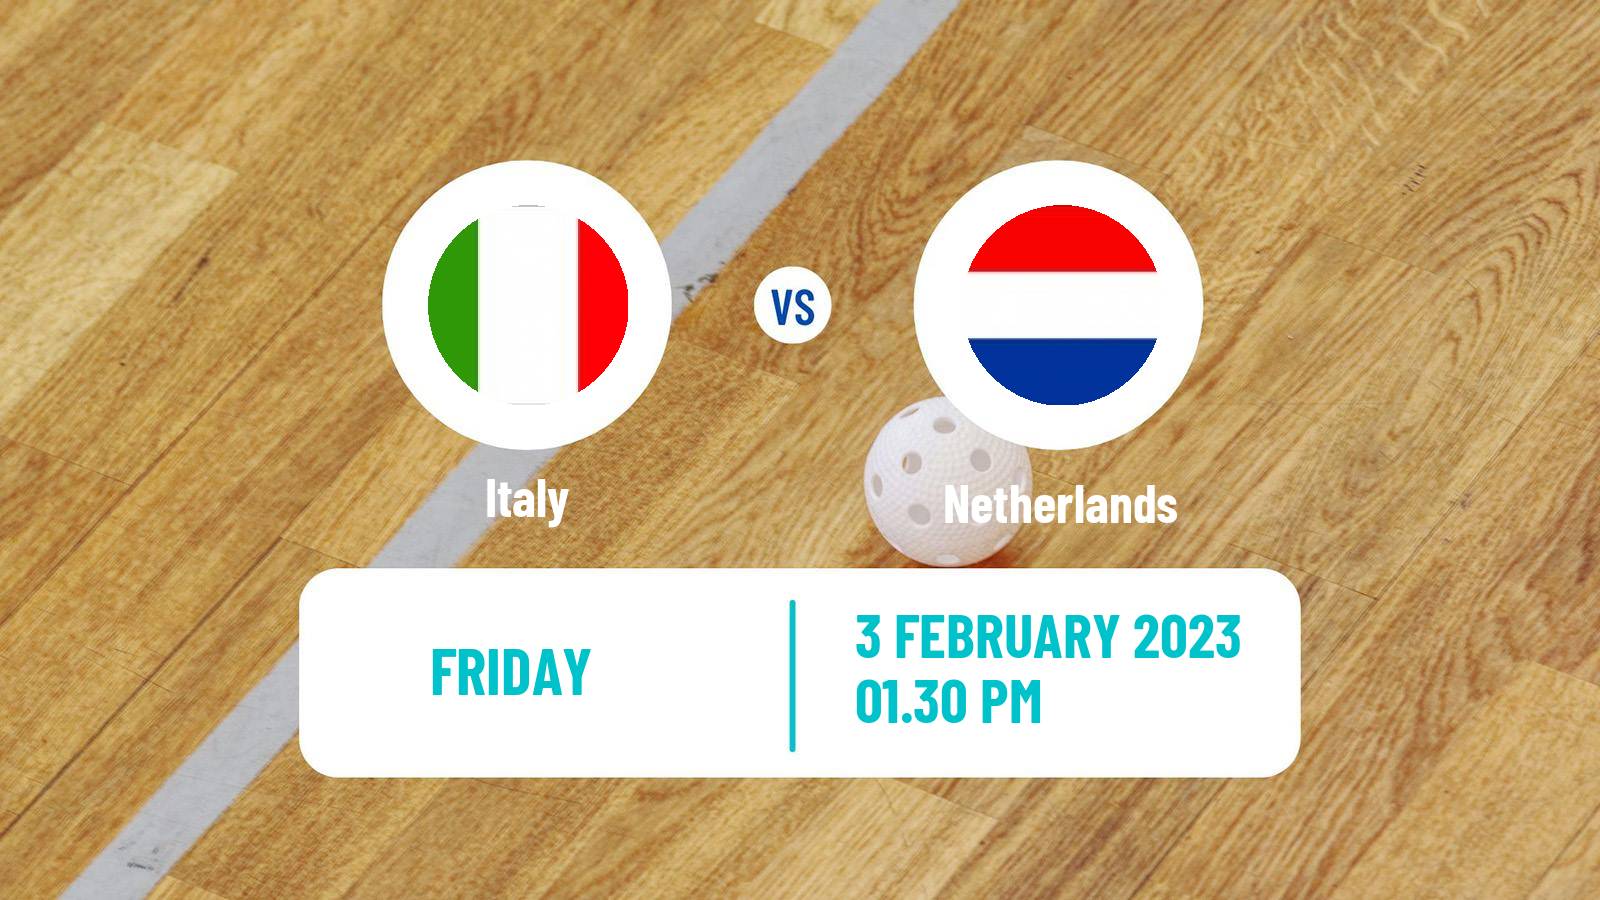 Floorball Friendly International Floorball Italy - Netherlands